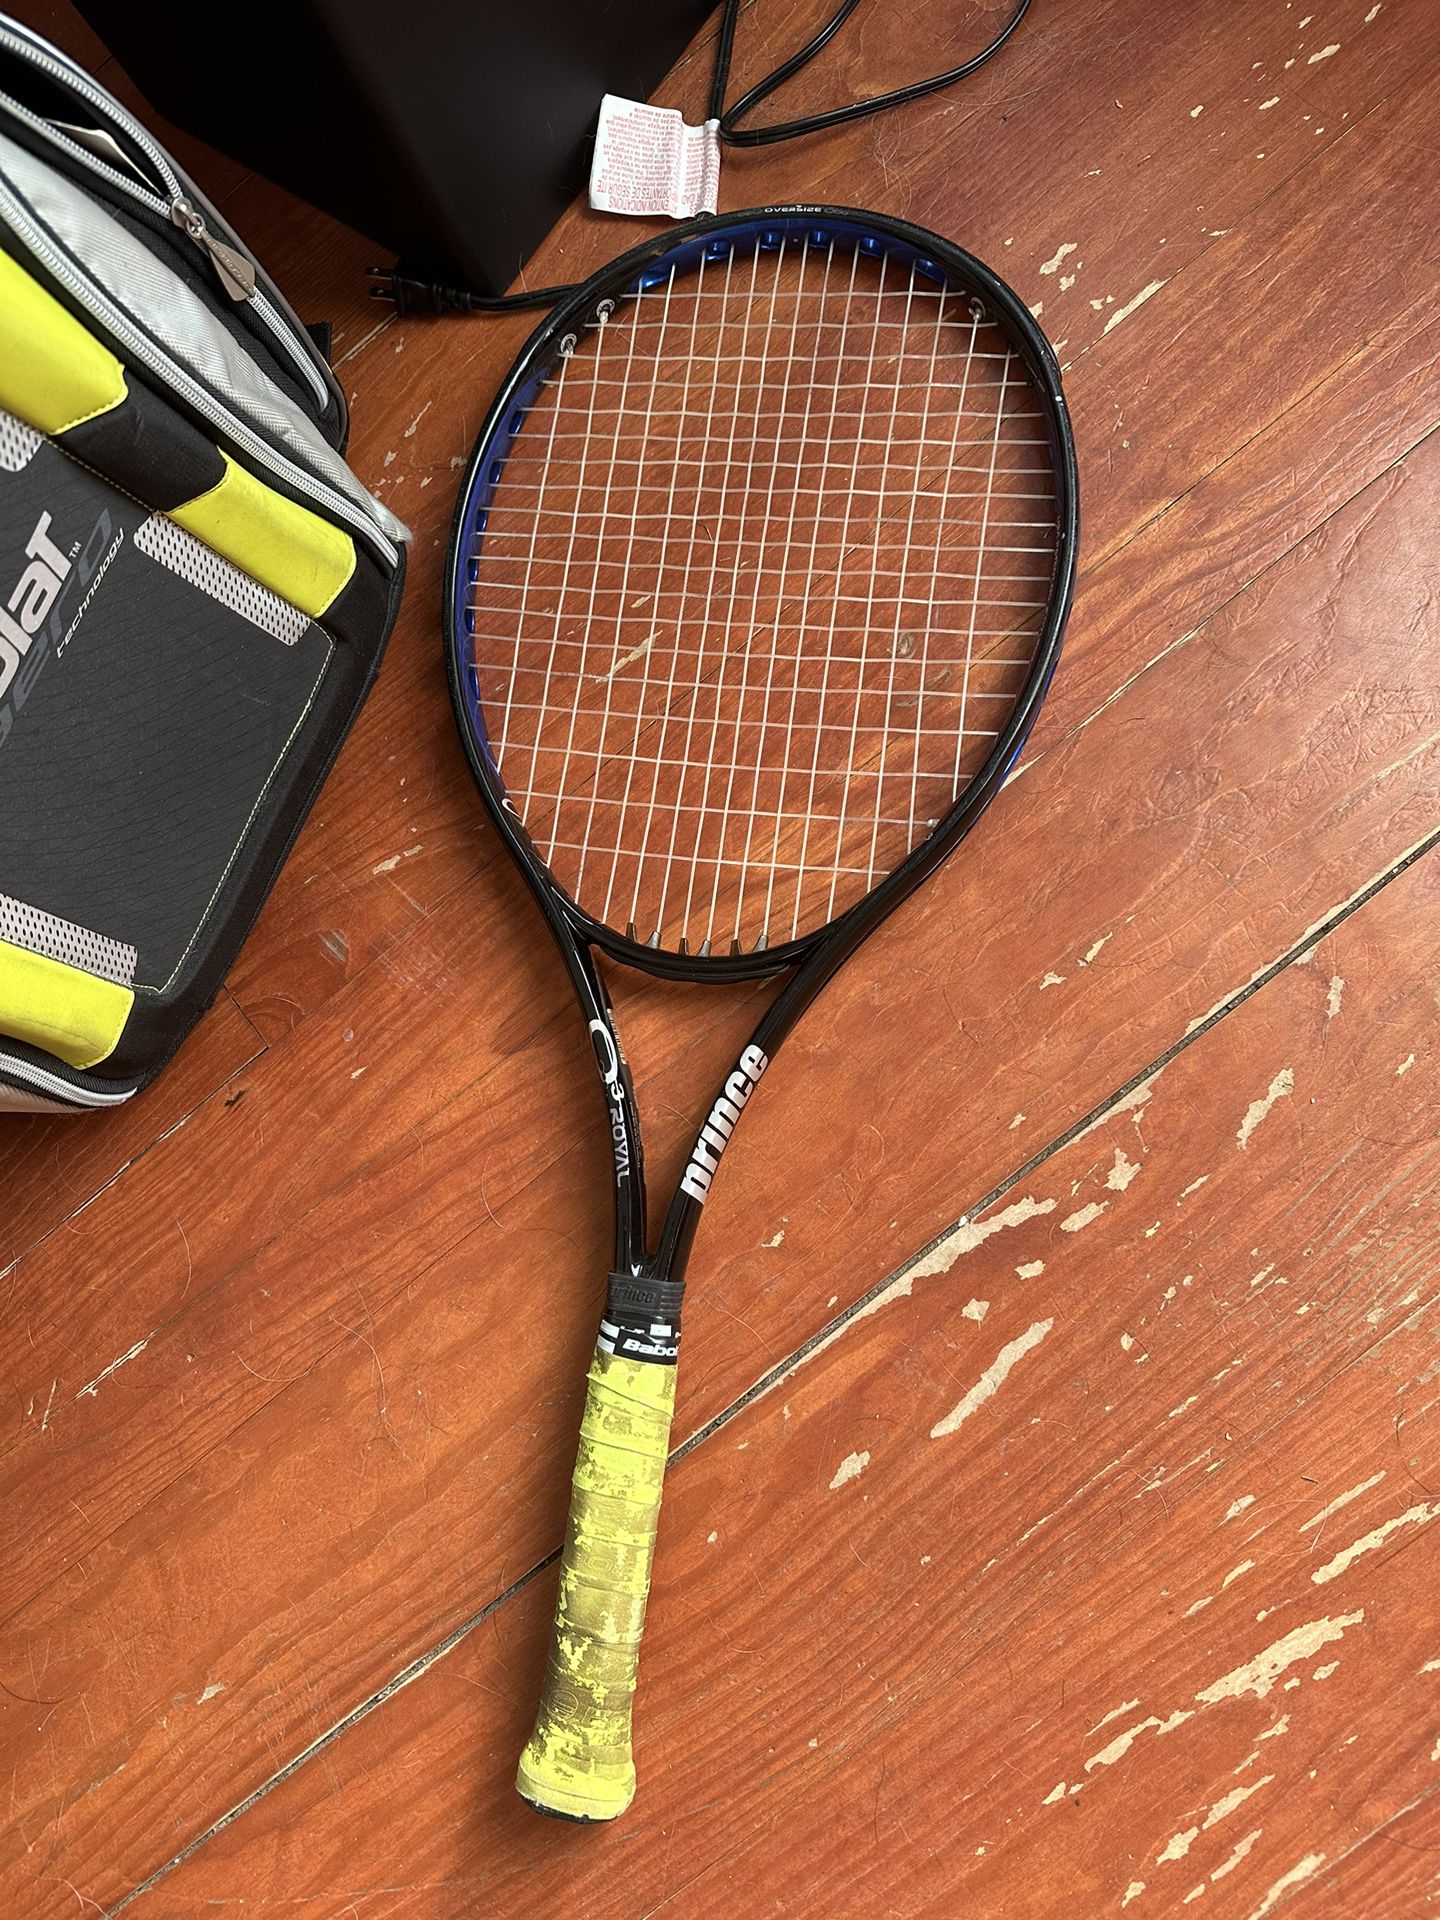 Prince Tennis Racket And Bag